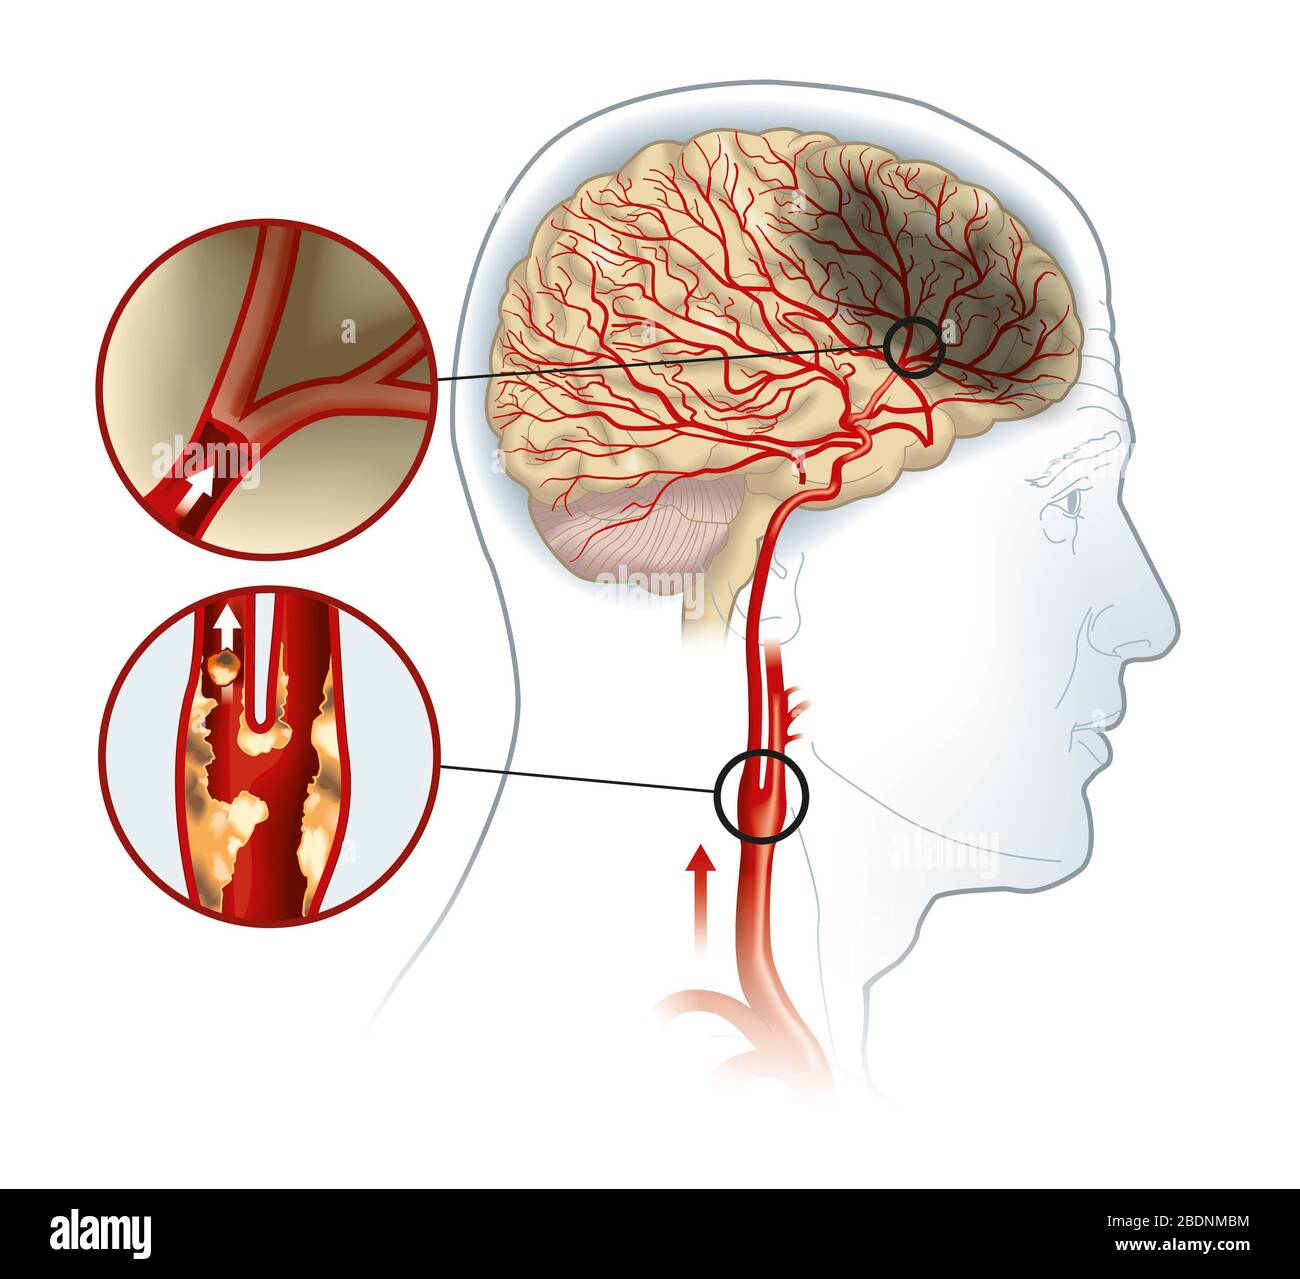 Illustration montrant la plaque de l'artère carotide, une caillot sanguin  se brisant et bloquant le flux sanguin Photo Stock - Alamy